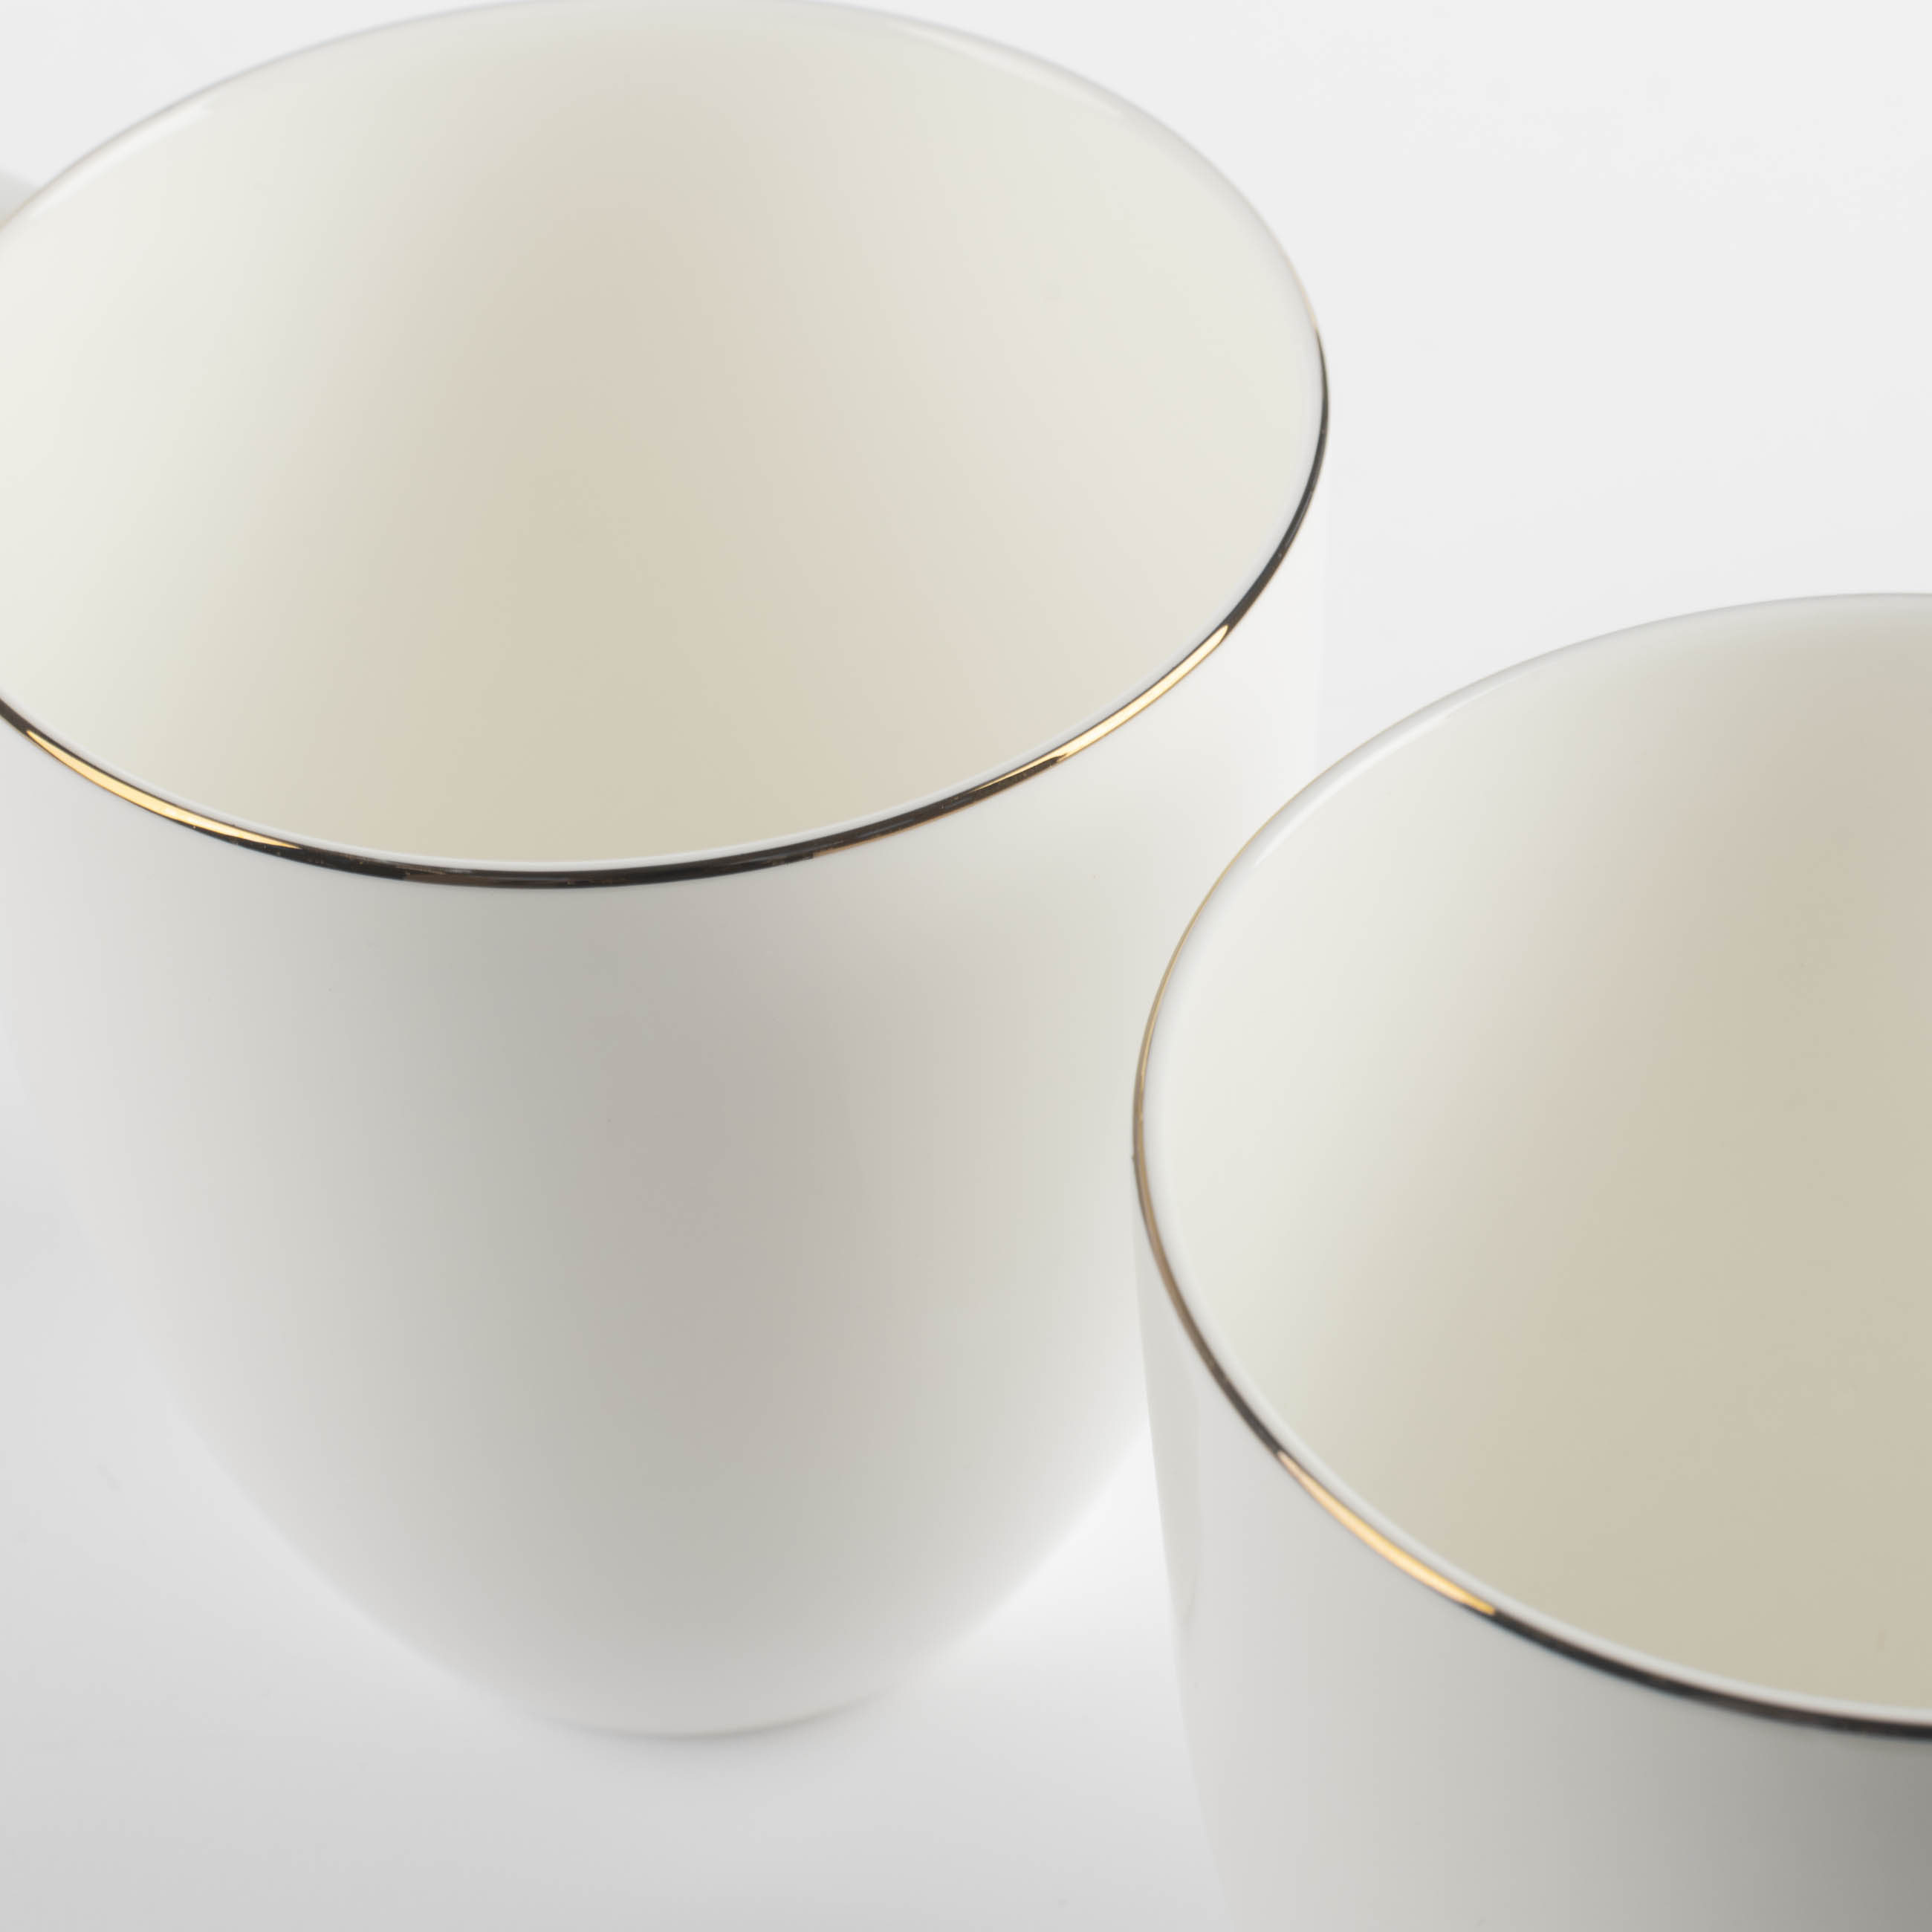 Mug, 450 ml, 2 pcs, porcelain F, white, Ideal gold изображение № 3